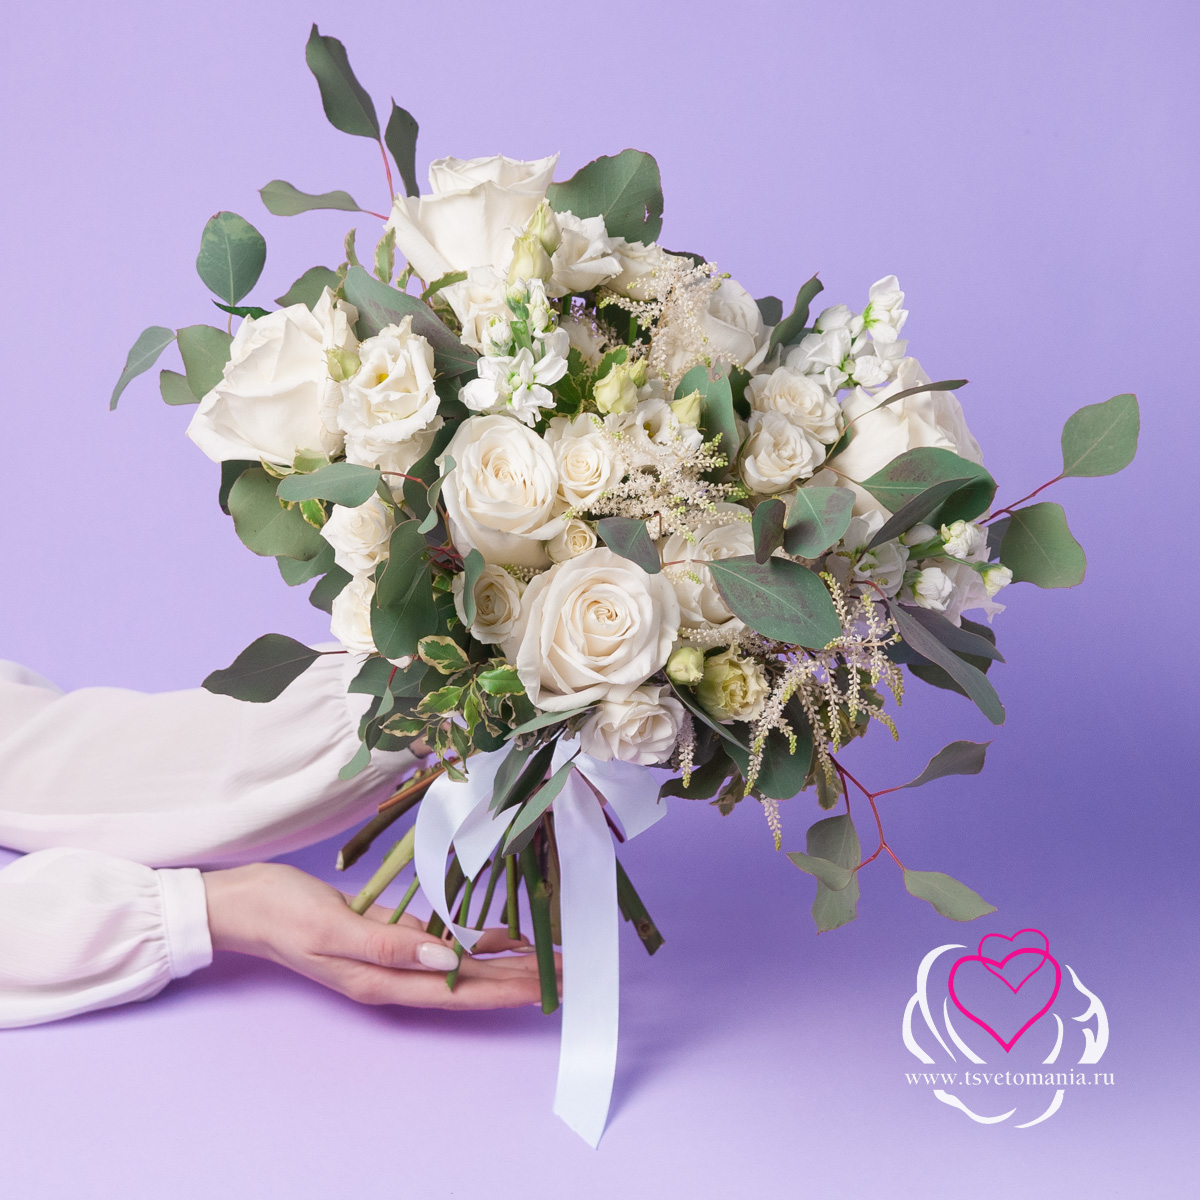 Белый свадебный букет из роз и астильбы набор астильбы яркий подарок 3 шт